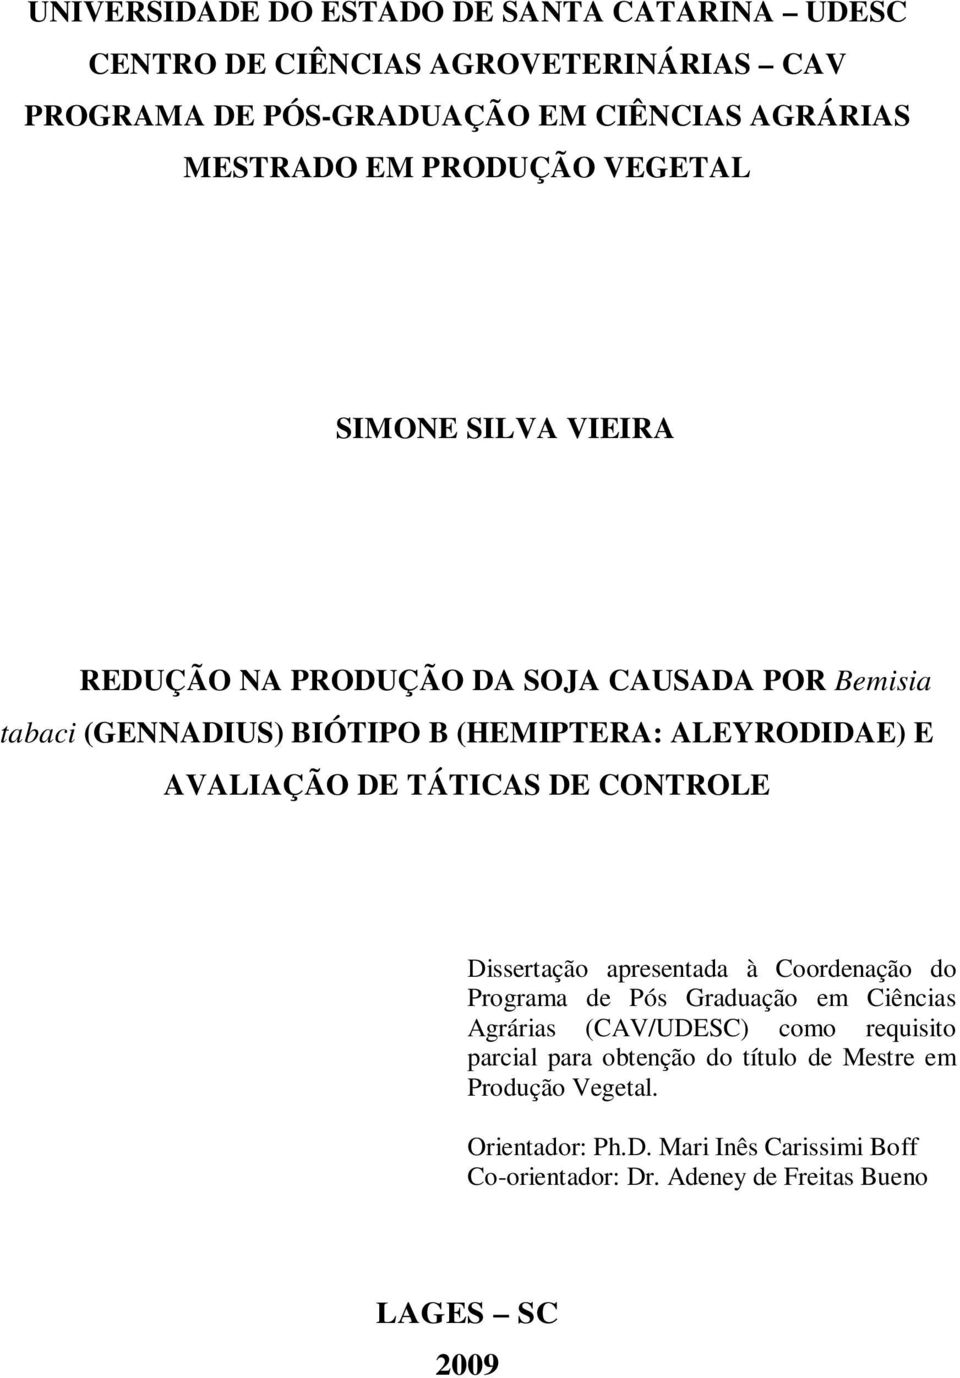 AVALIAÇÃO DE TÁTICAS DE CONTROLE Dissertção presentd à Coordenção do Progrm de Pós Grdução em Ciêncis Agráris (CAV/UDESC) como requisito prcil